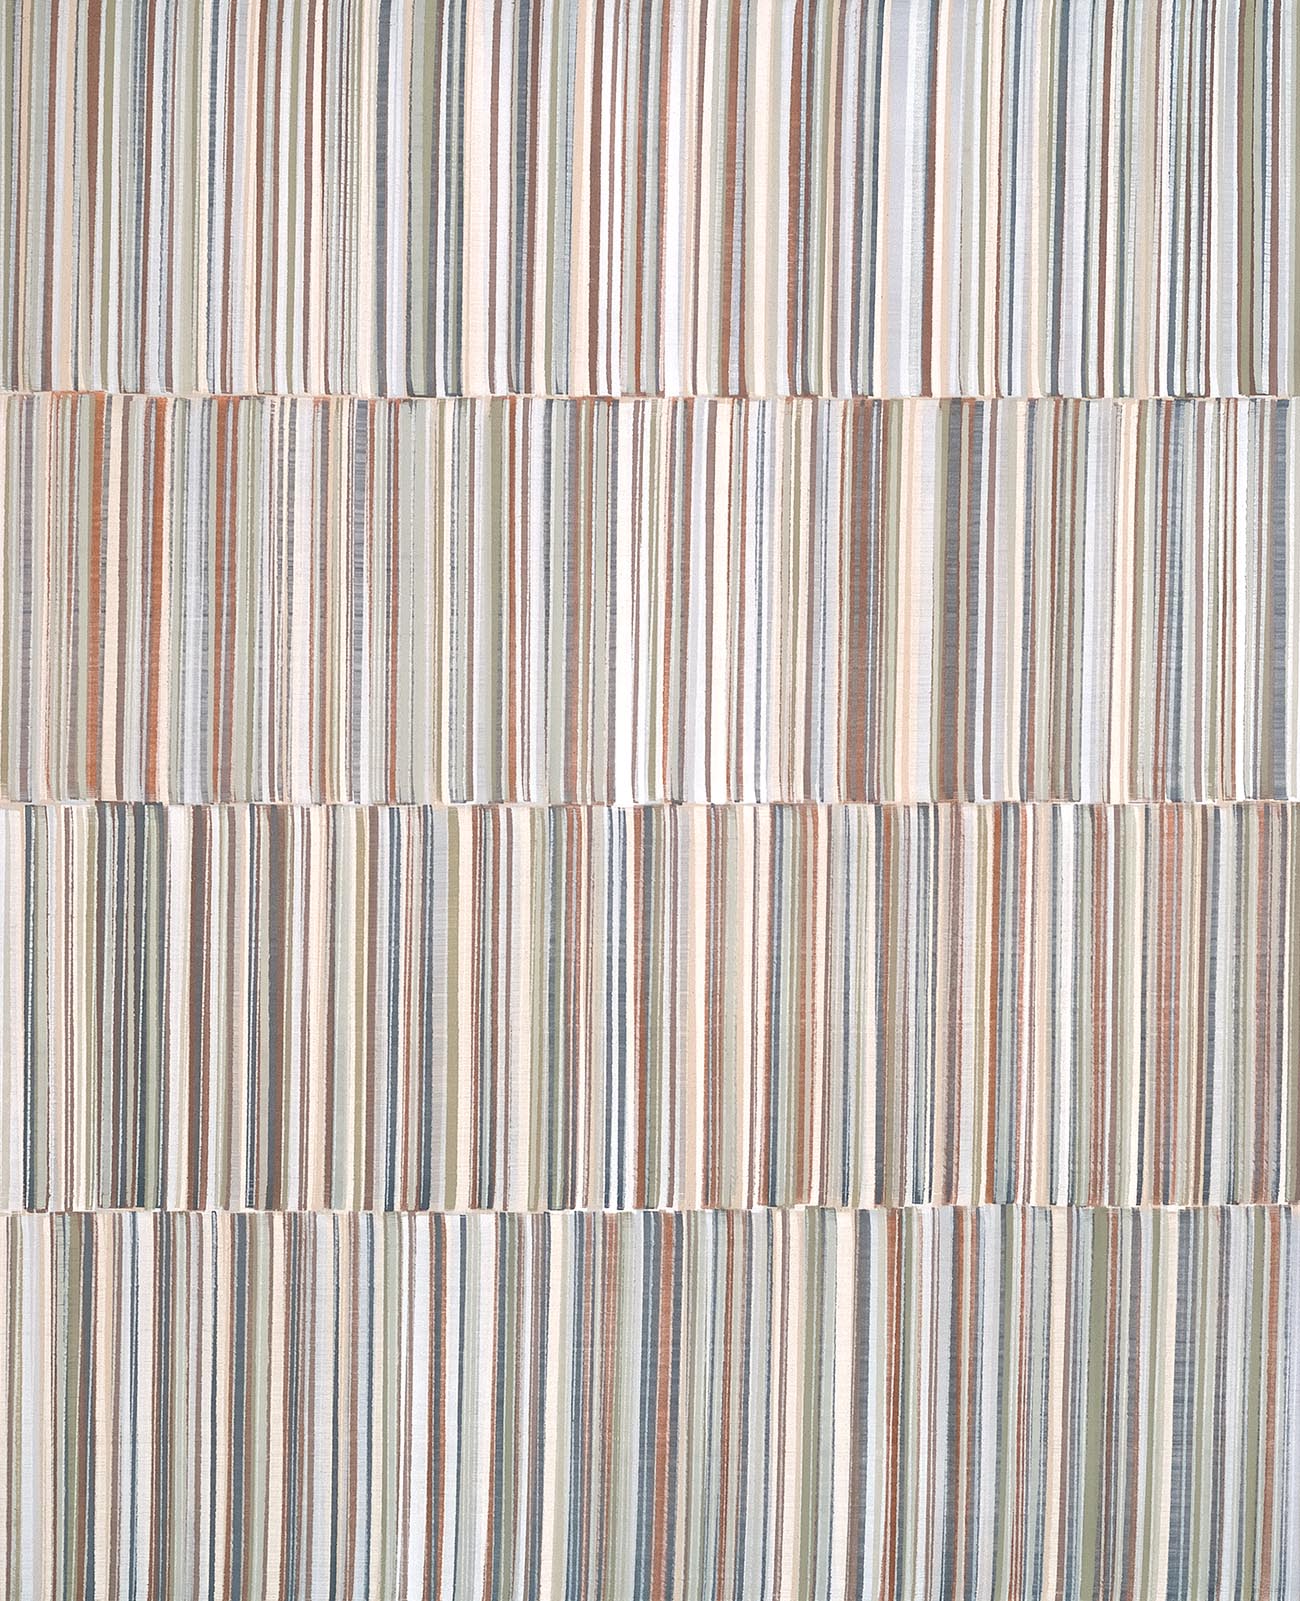 Nikola Dimitrov, Komposition III, 2016, Pigmente, Bindemittel, Lösungsmittel auf Leinwand, 160 x 130 cm